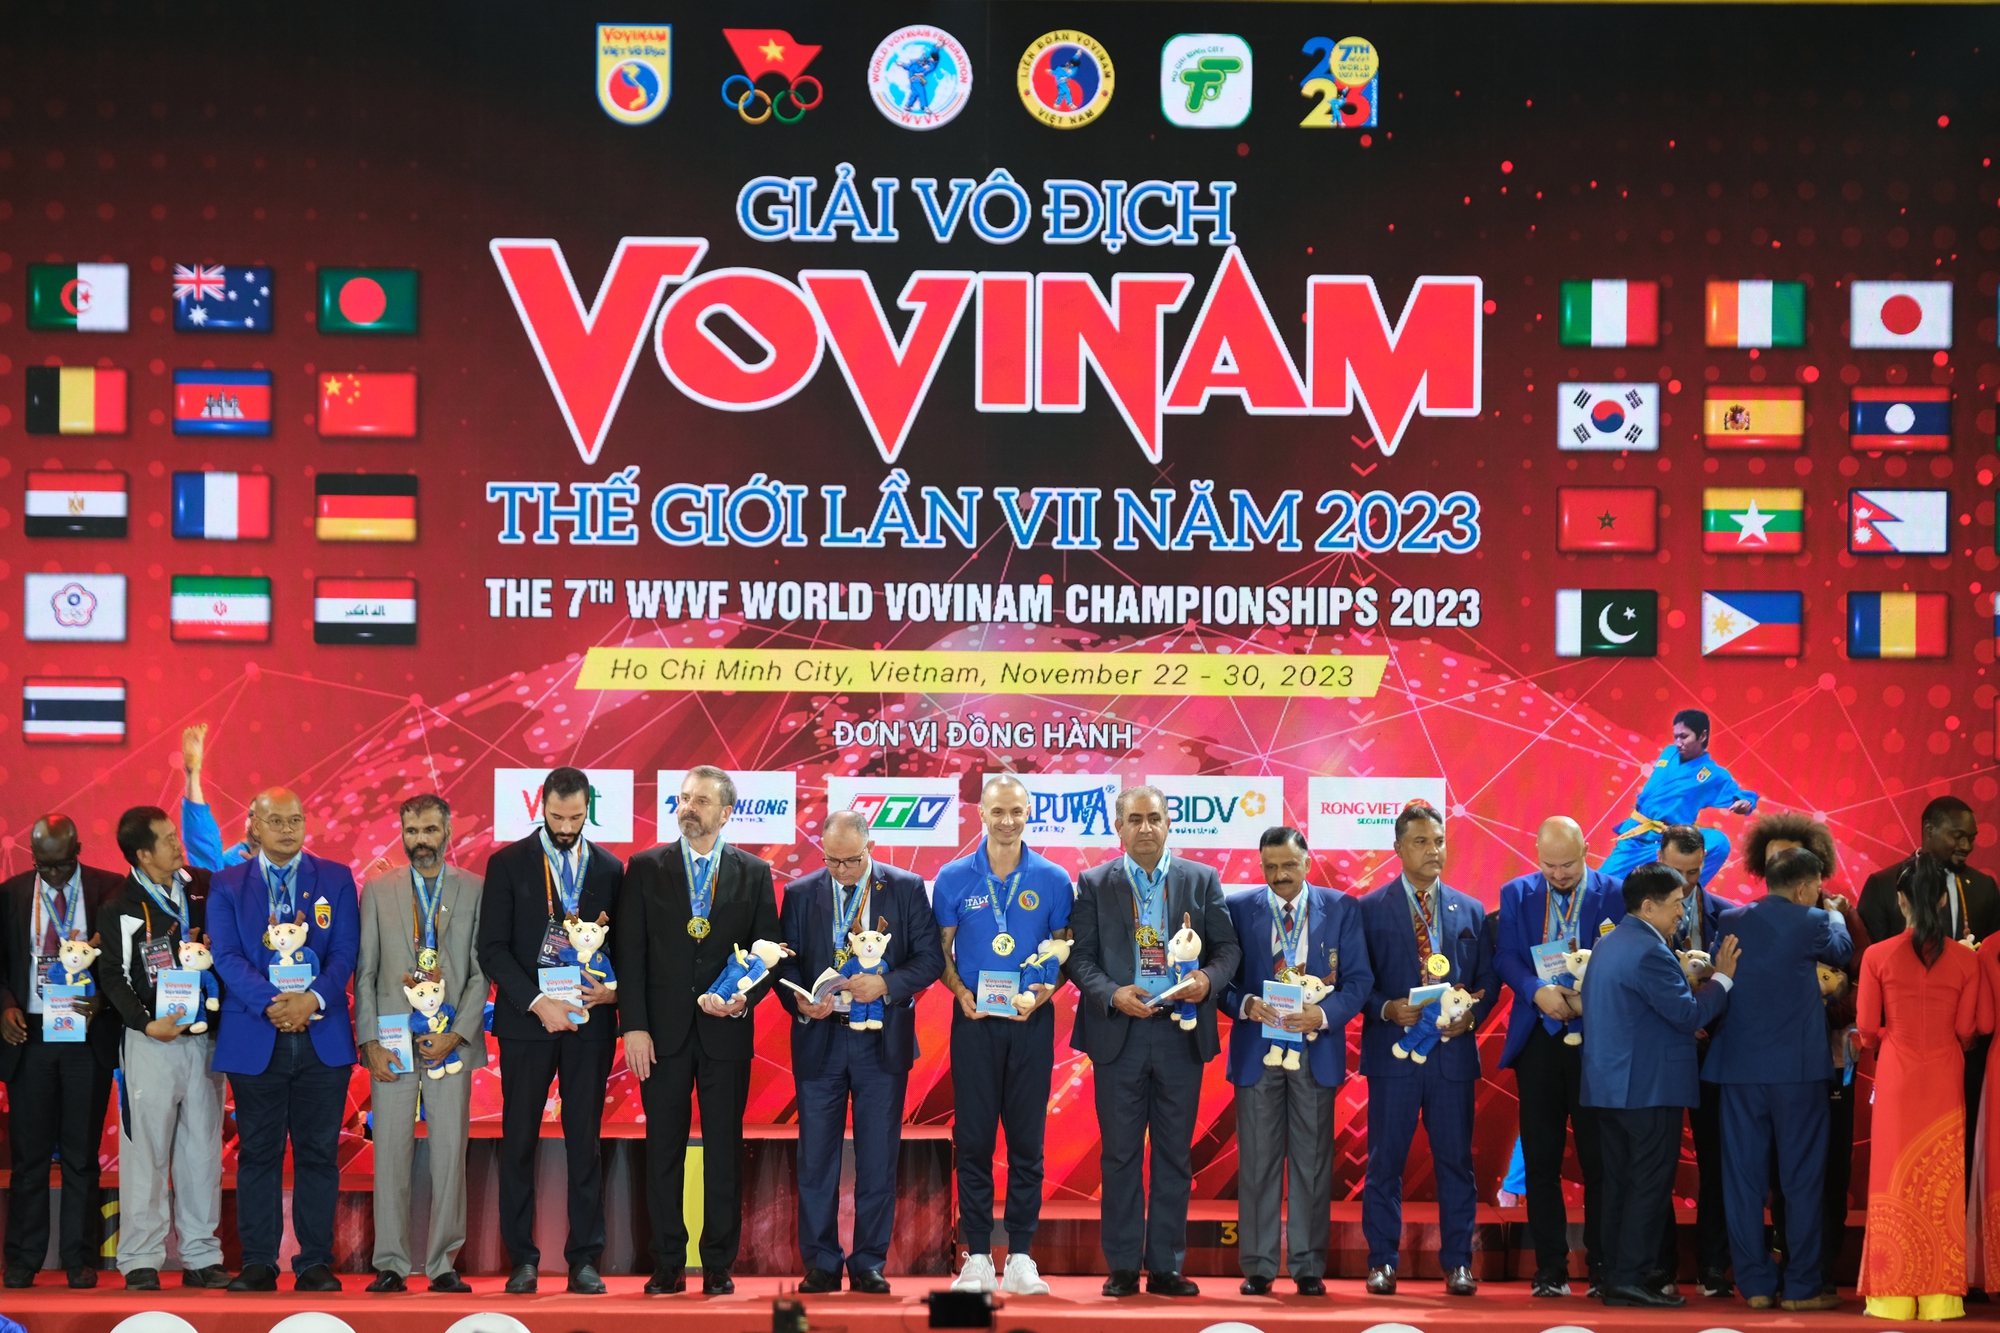 Giải vô địch Vovinam thế giới lần VII năm 2023: Việt Nam giành vị trí nhất toàn đoàn - Ảnh 3.